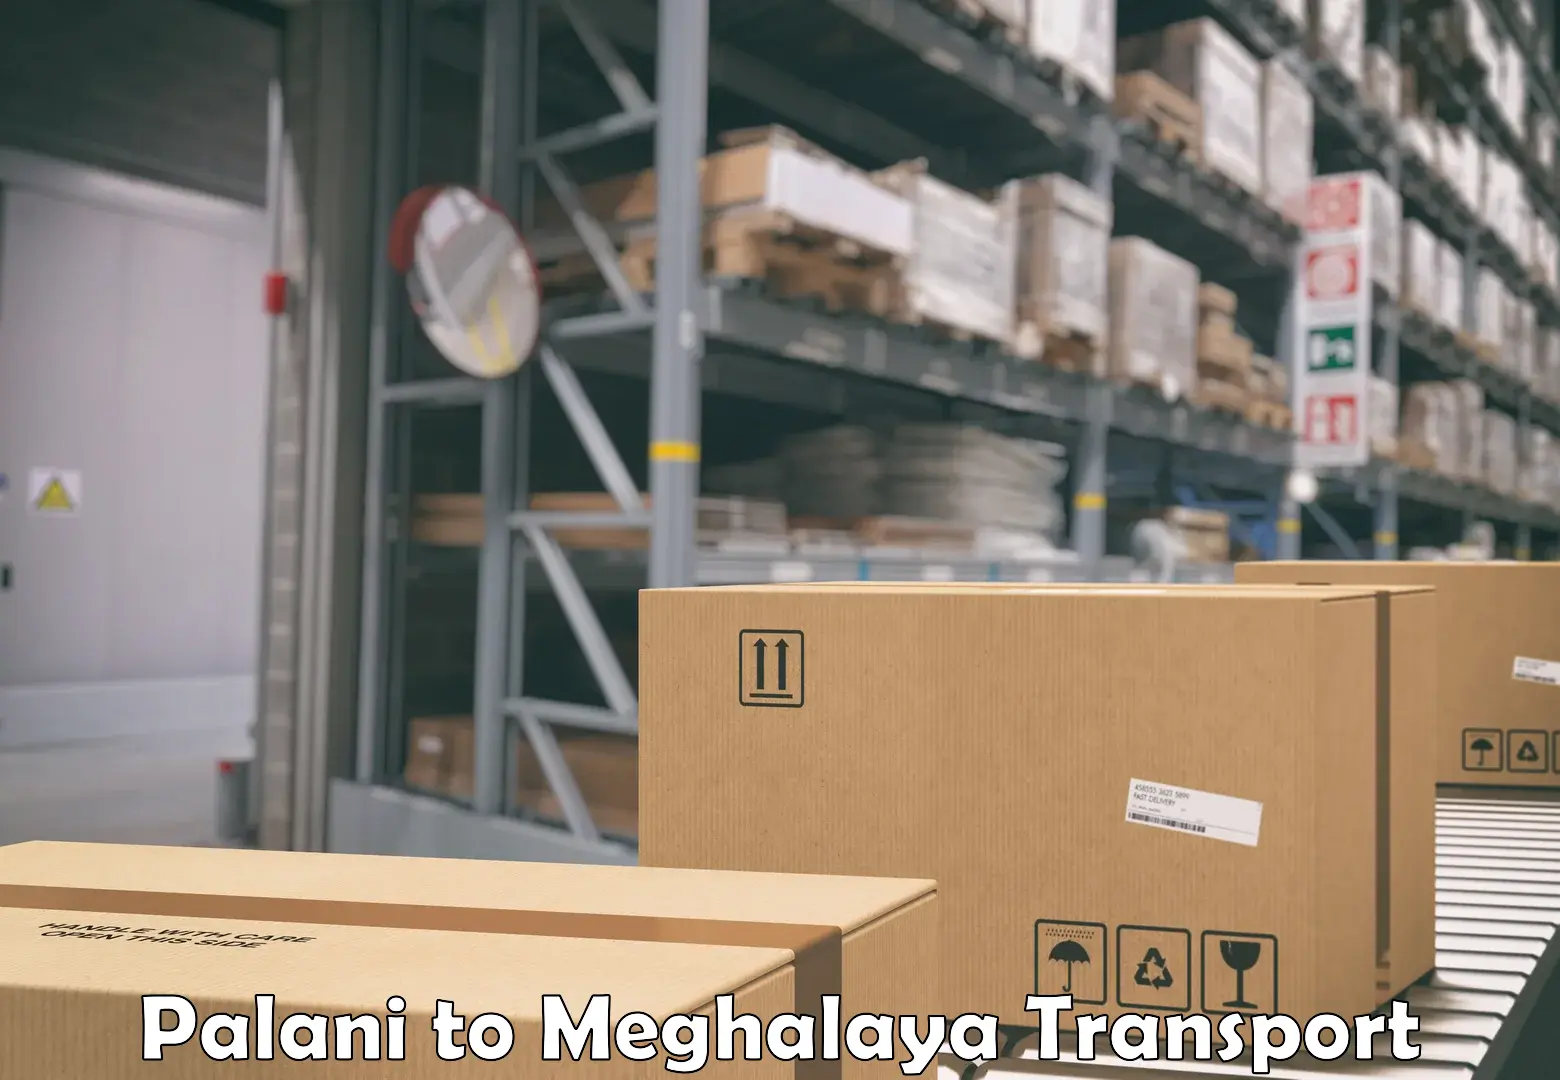 Daily transport service Palani to Meghalaya